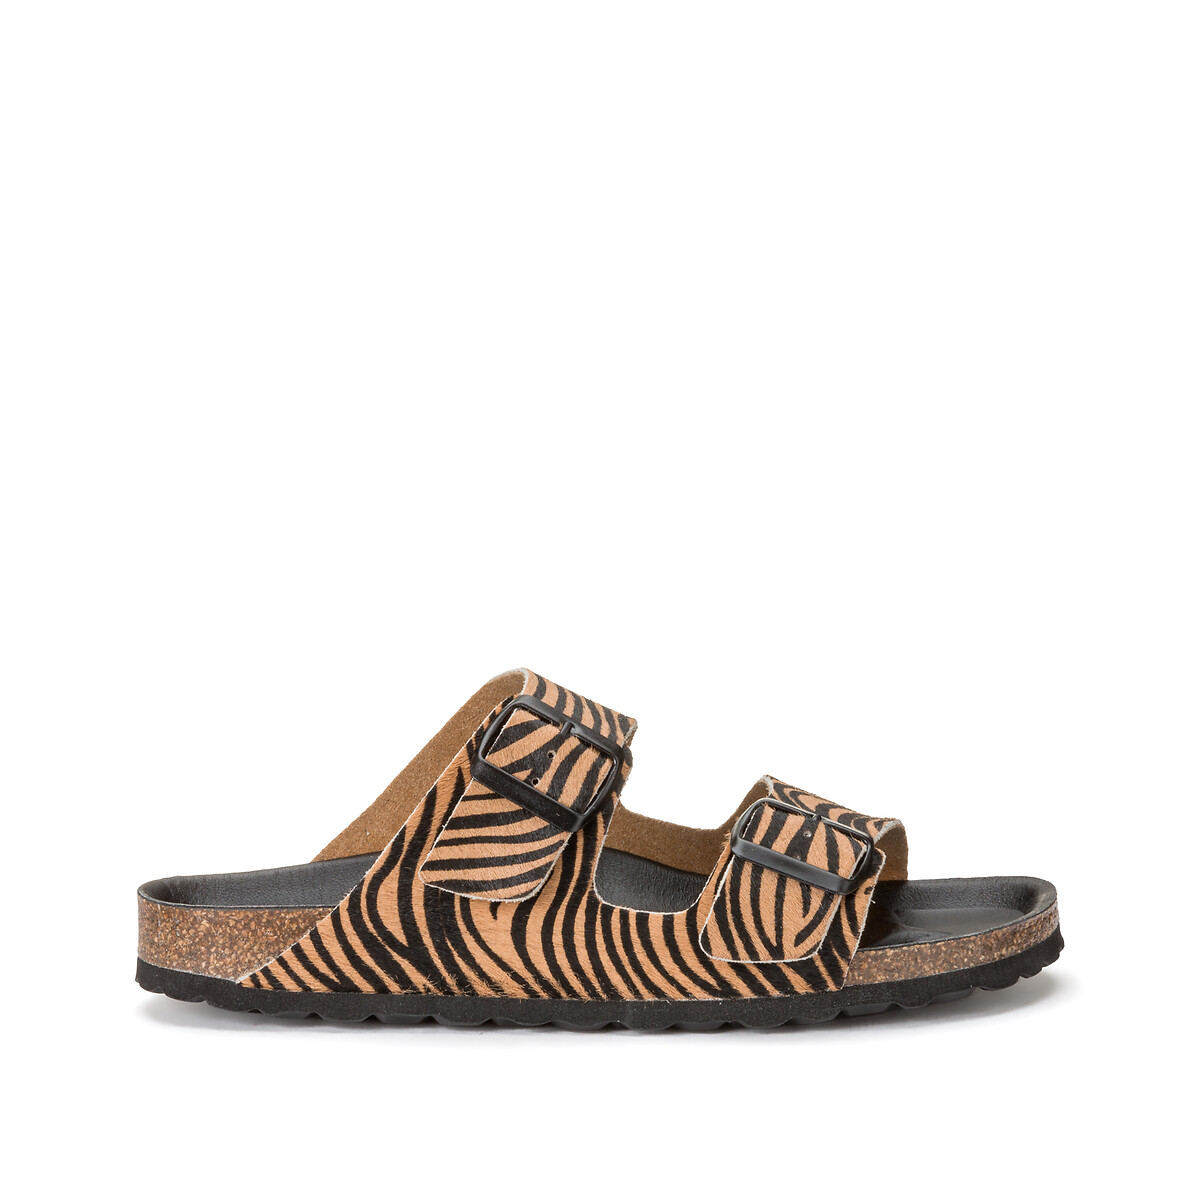 Chinelos em pele, estampado zebra, especial pés largos, do 38 ao 45